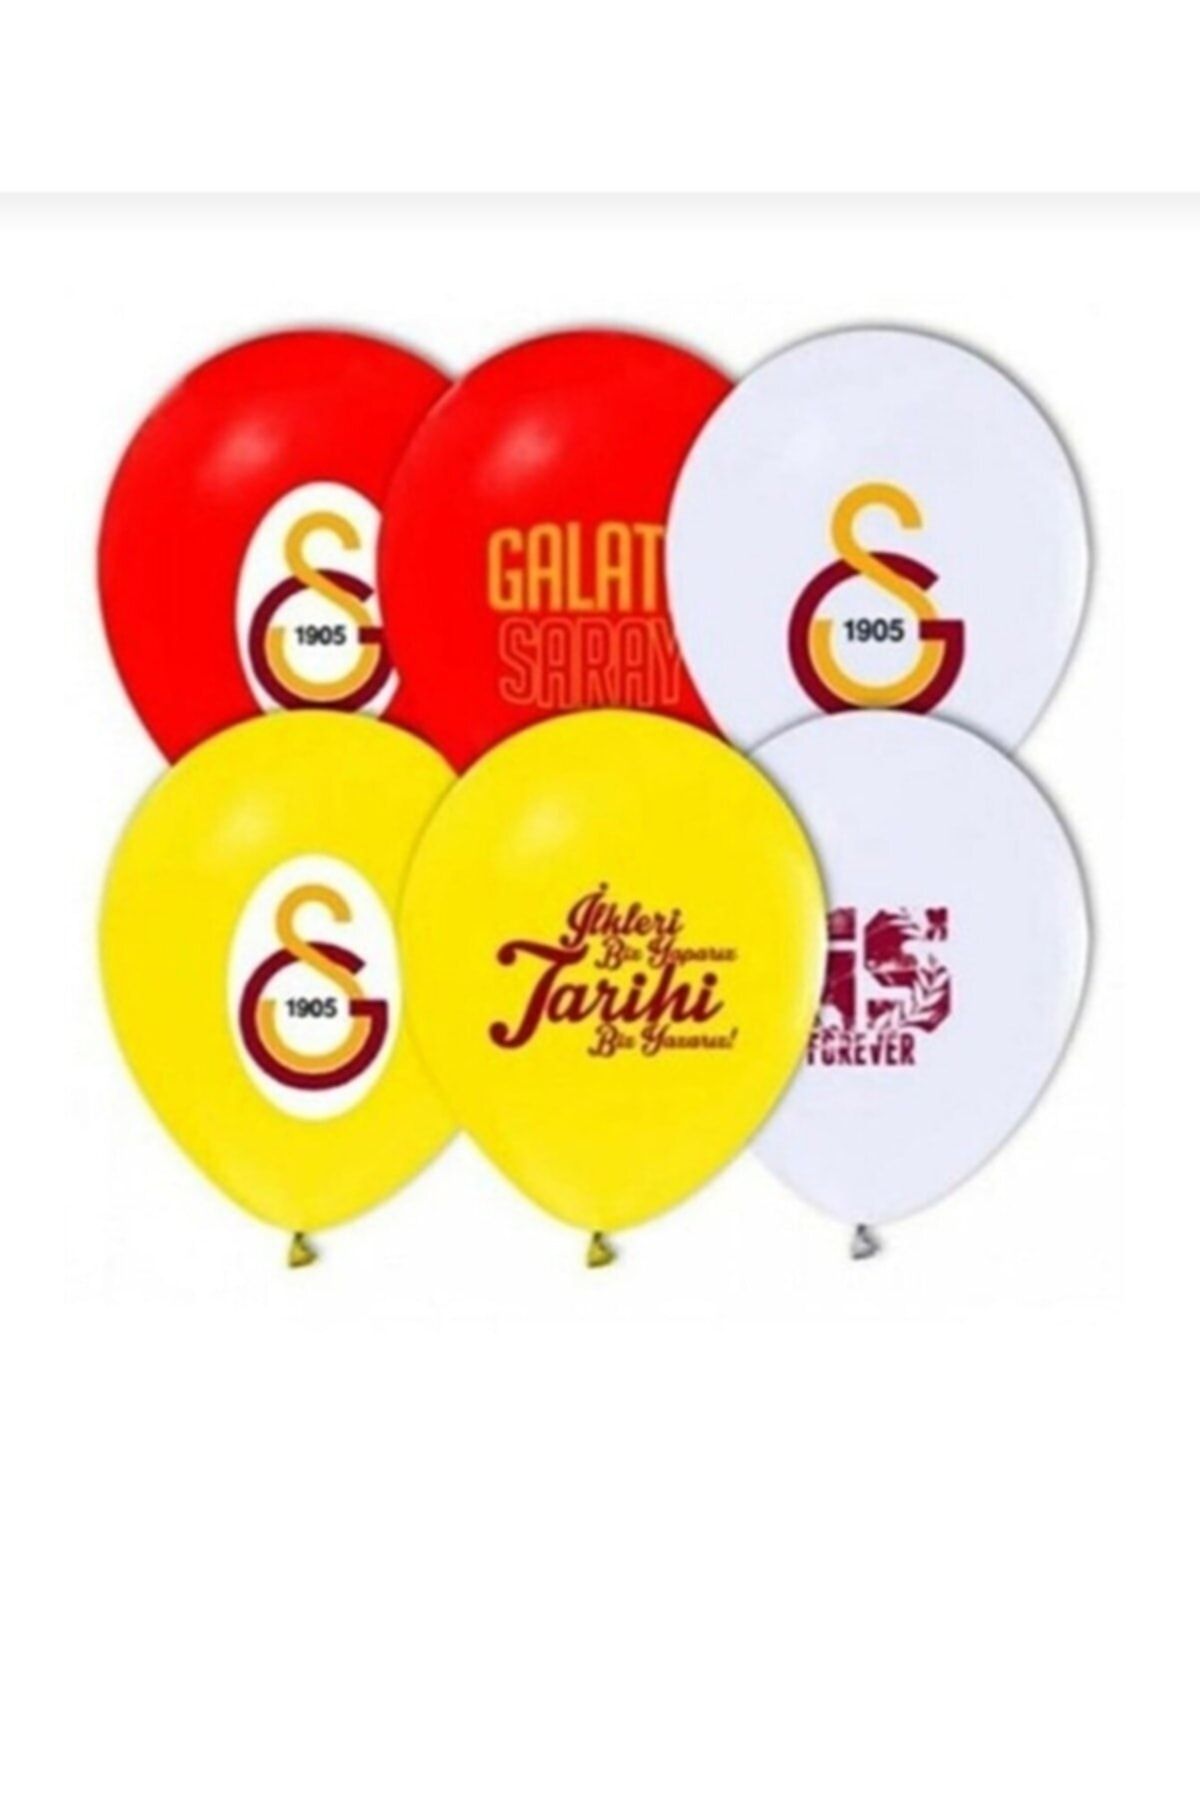 mypartyready Galatasaray Takımı Logo Baskılı Lisanslı Balon 10 Adet. Galatasaray Doğum Günü Süsleme